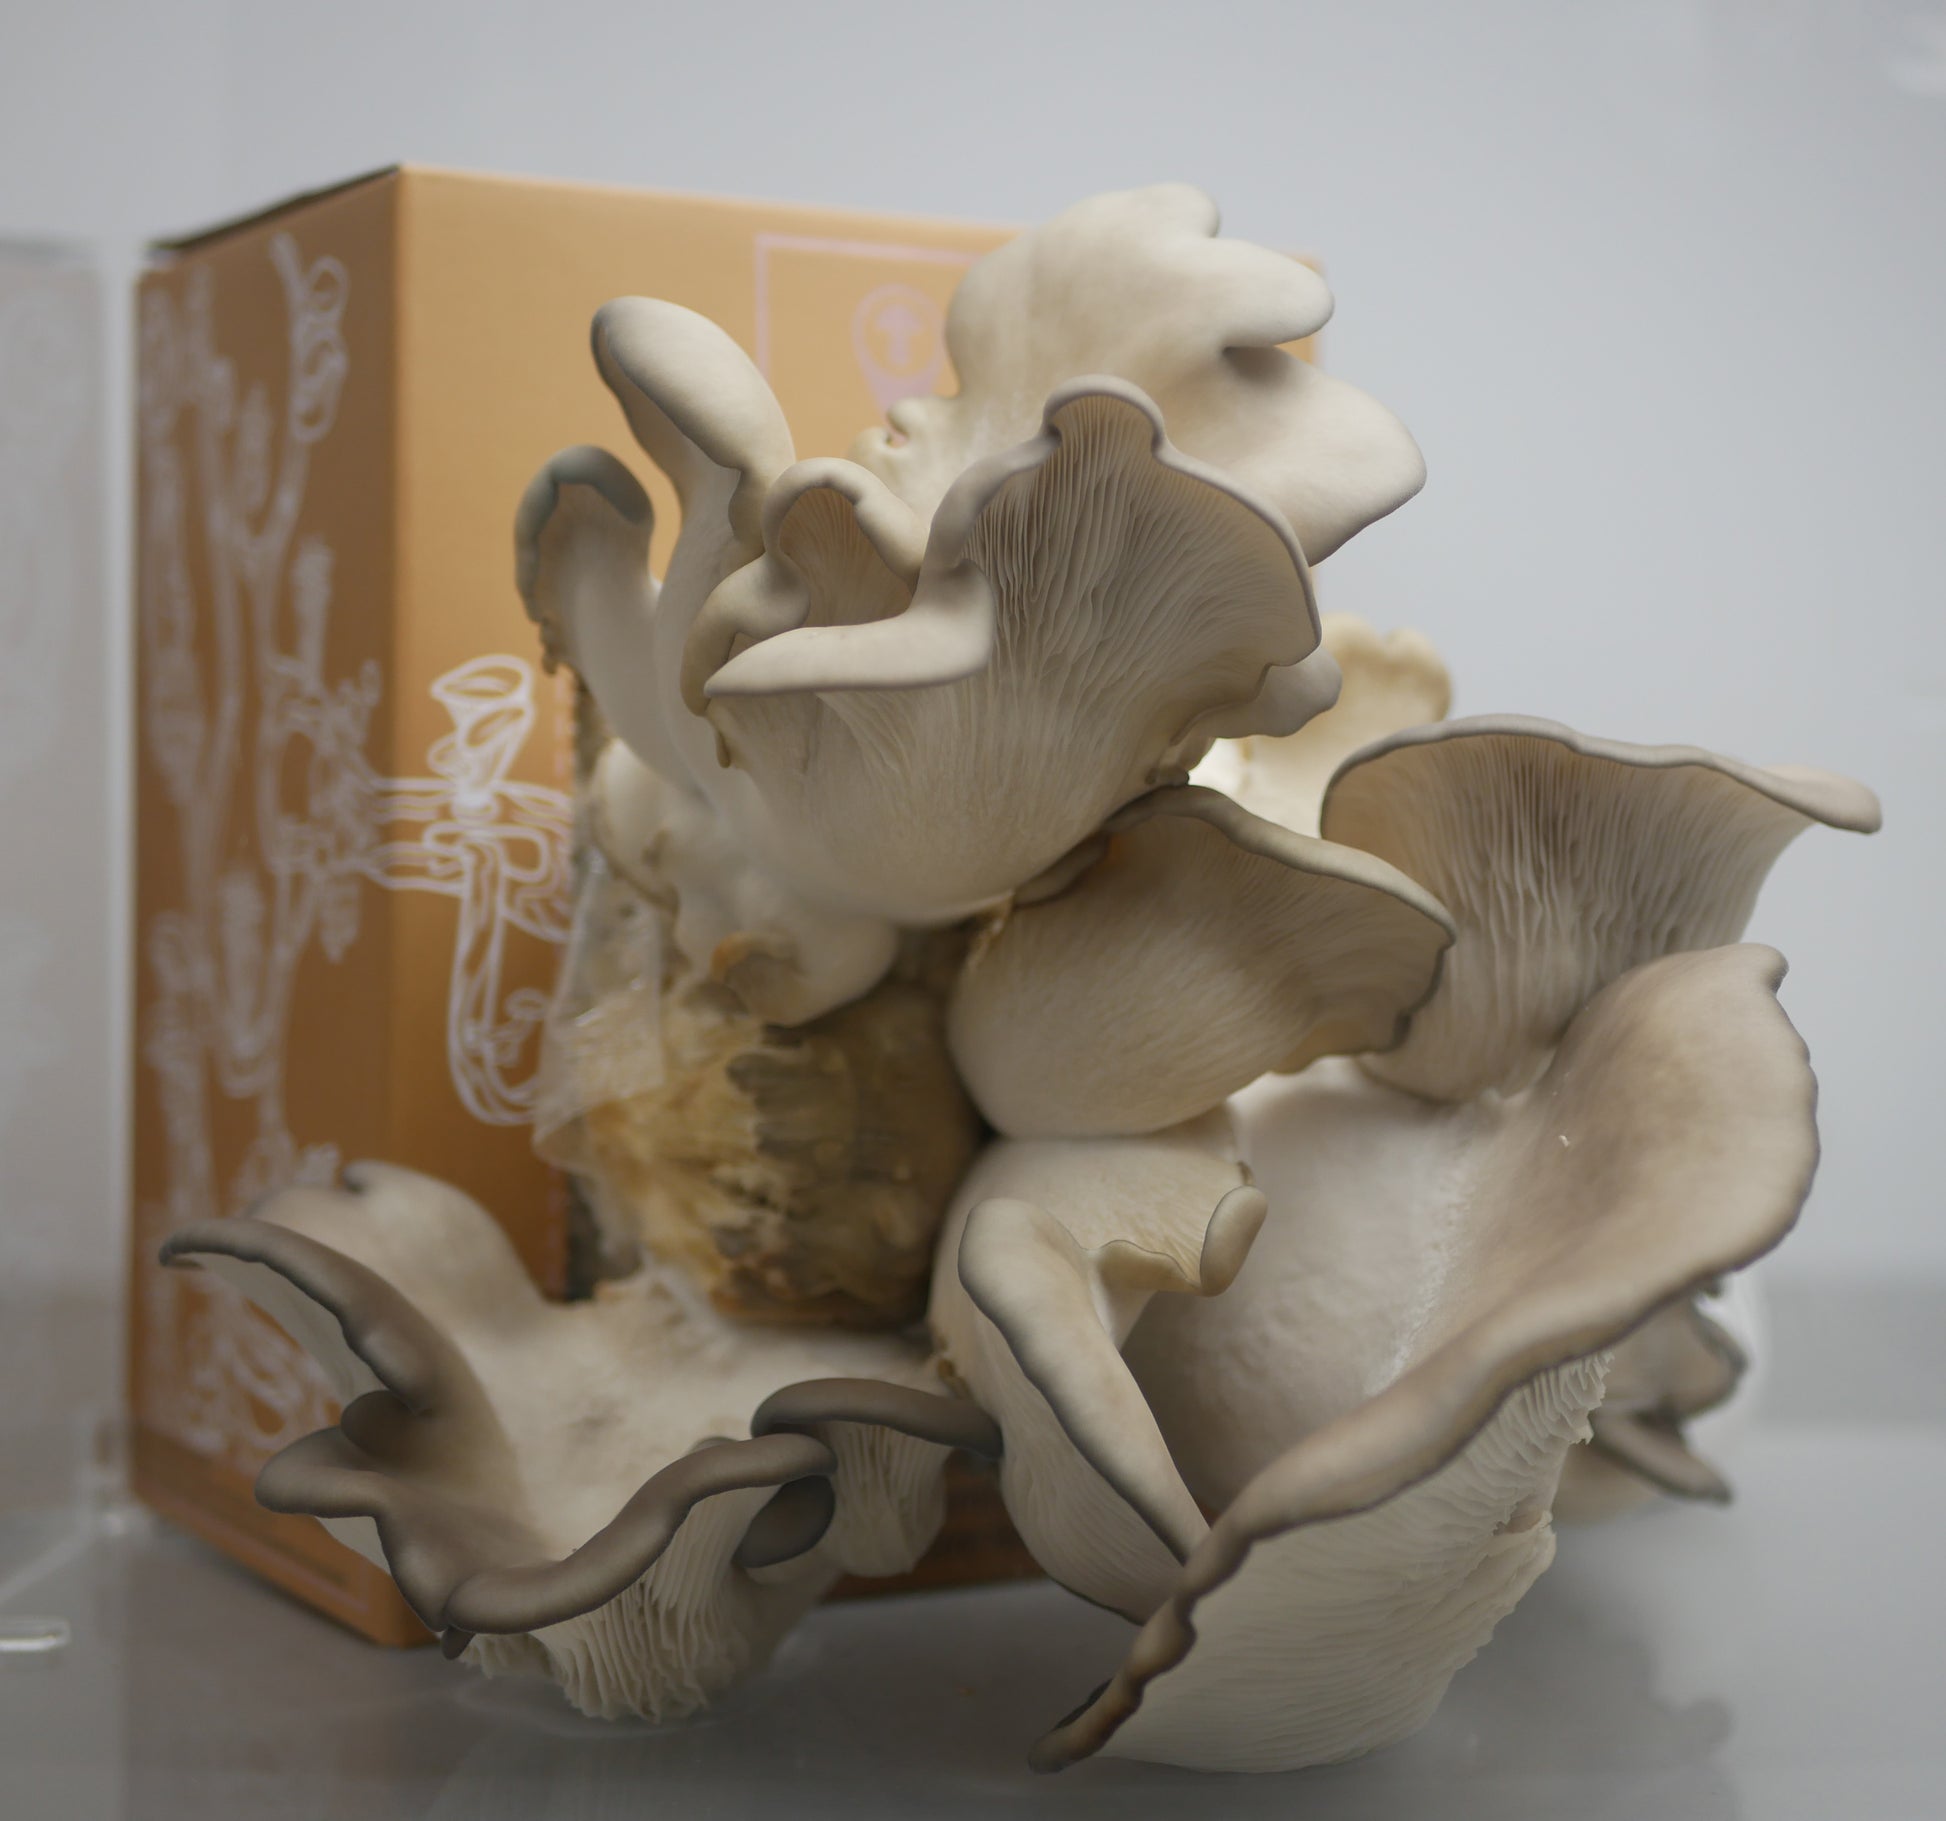 Baby Mushroom Kit de marco de fotos de arcilla para manos y huellas,  captura momentos de hitos con arcilla segura, juego de plantillas y marco  de